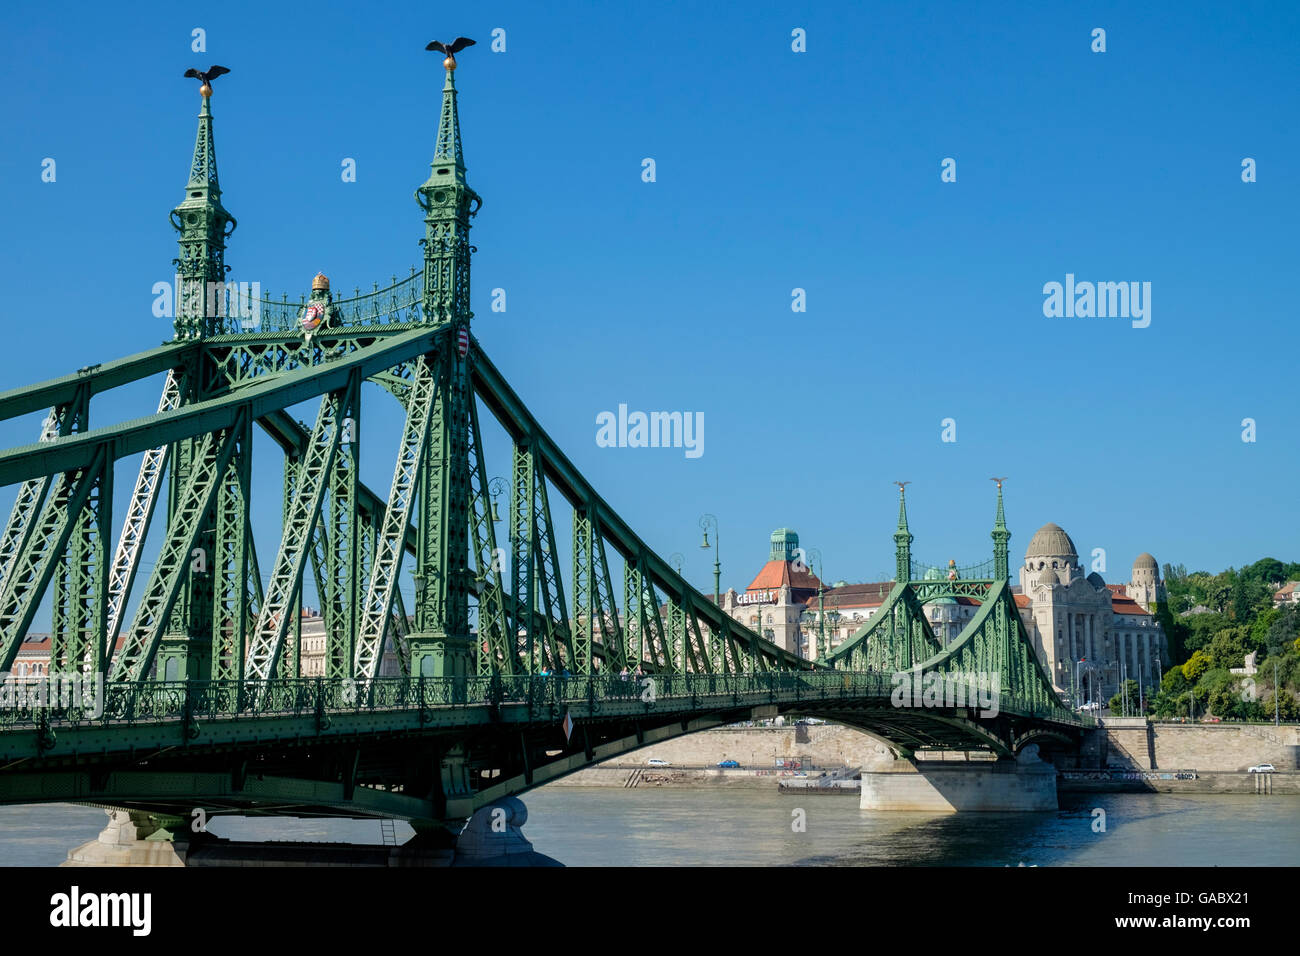 Puente Liberty (aka libertad Puente), un voladizo el puente del braguero, conectando a Buda y Pest, central en Budapest, Hungría Foto de stock